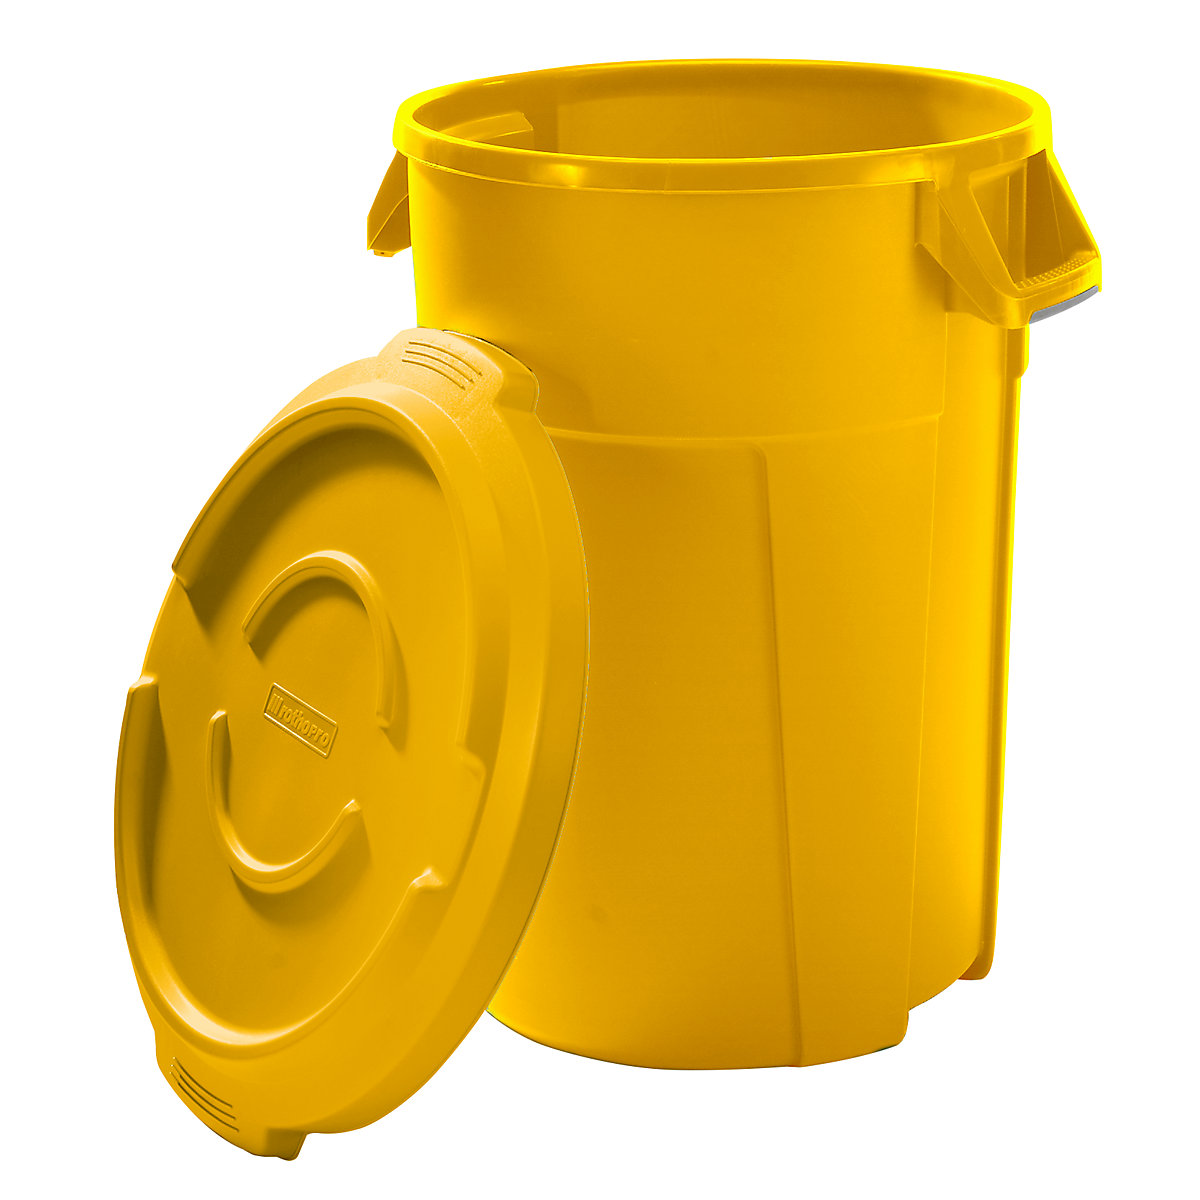 Višenamjenski spremnik s poklopcem – rothopro, volumen 120 l, izvedba prikladna za kontakt s prehrambenim proizvodima, u žutoj boji-5